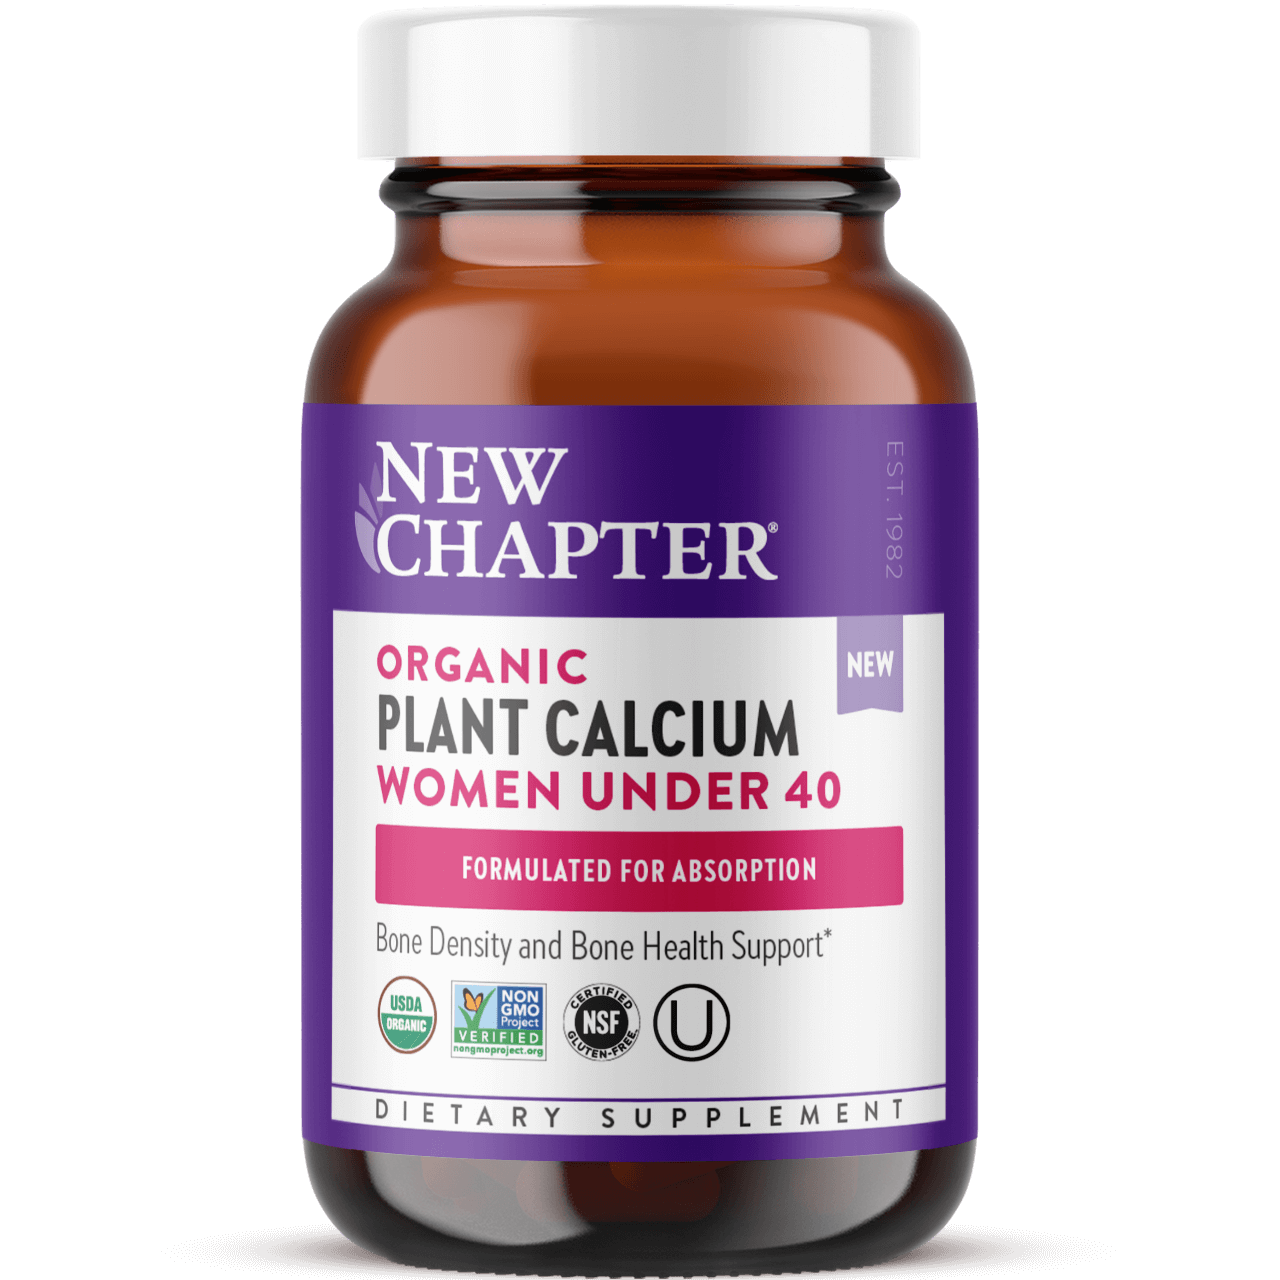 Organic Plant Calcium: Women Under 40